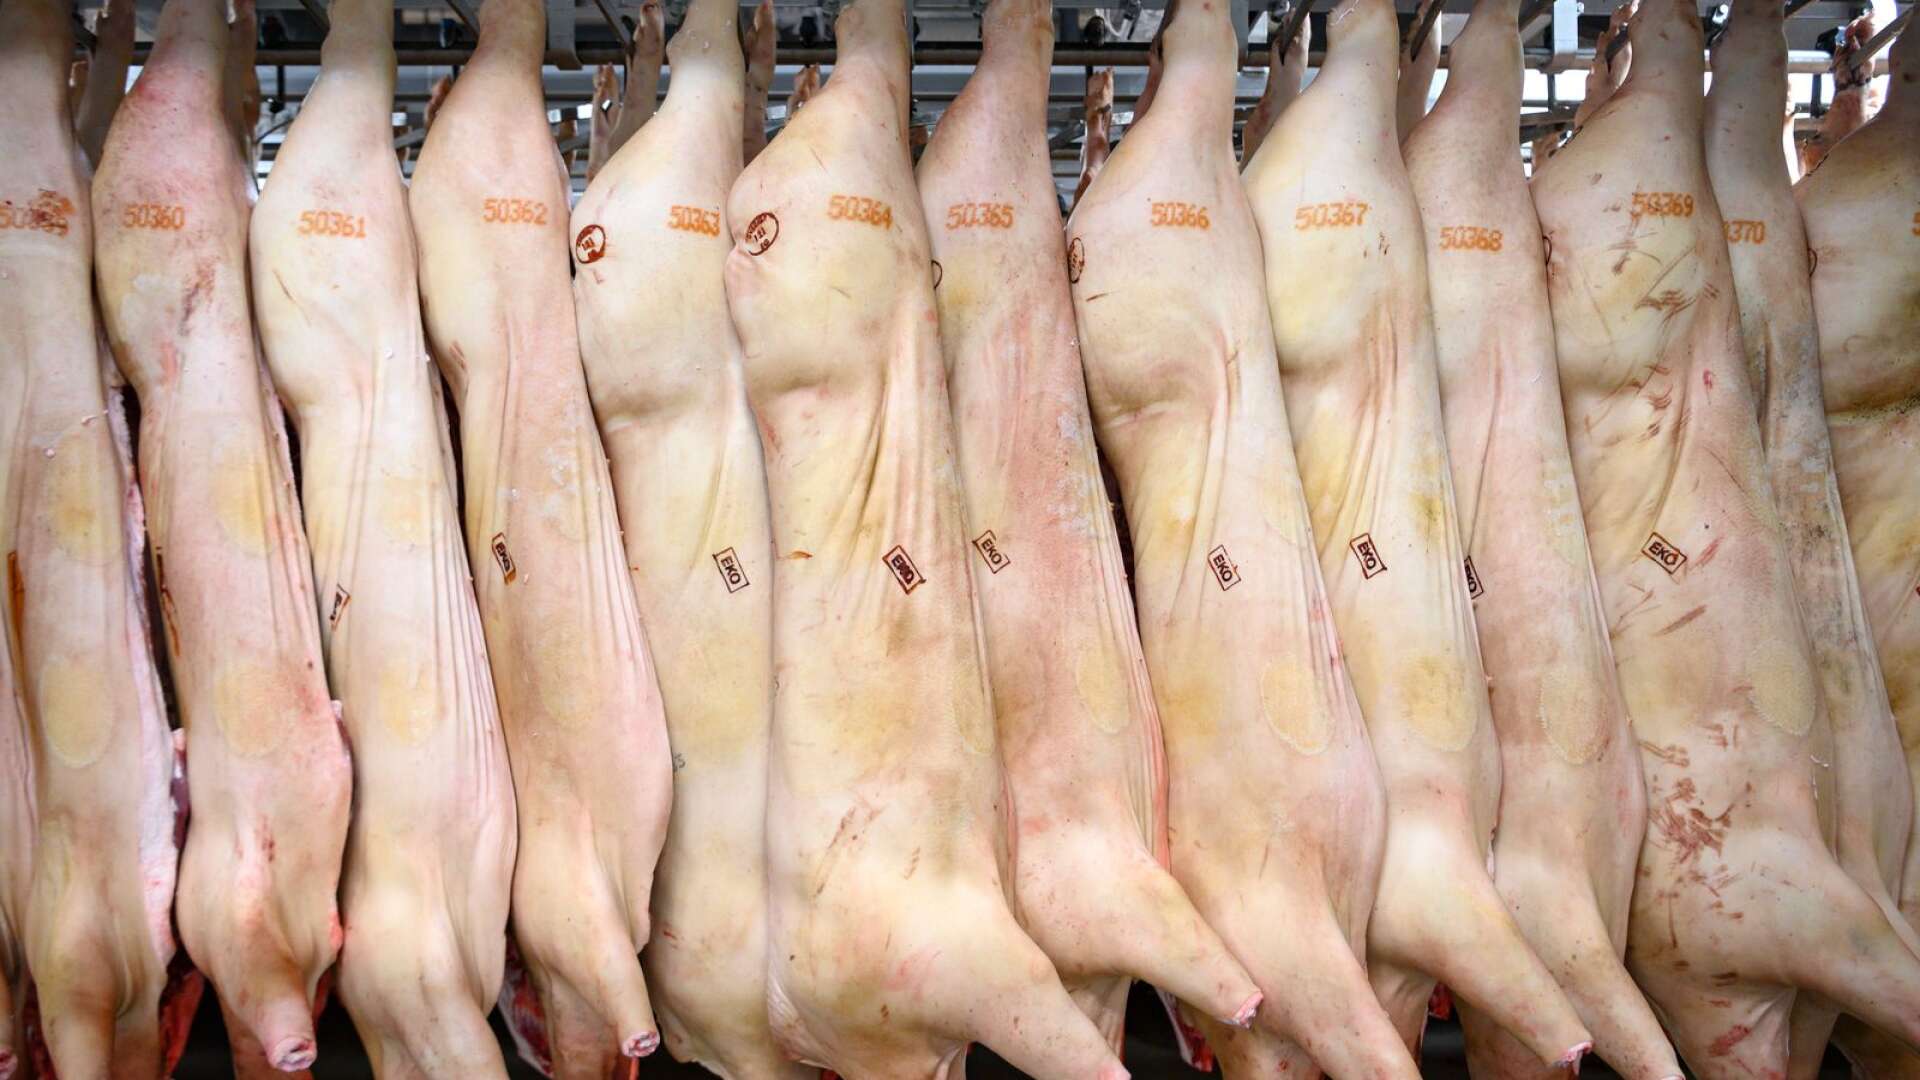 Eftersom slakteri och kötthantering är en av de verksamheter där EU anser att det finns mest risk att orsaka sjukdom, så är reglerna om livsmedelskontroll på slakteri särskilt omfattande, skriver Eiríkur Einarsson.